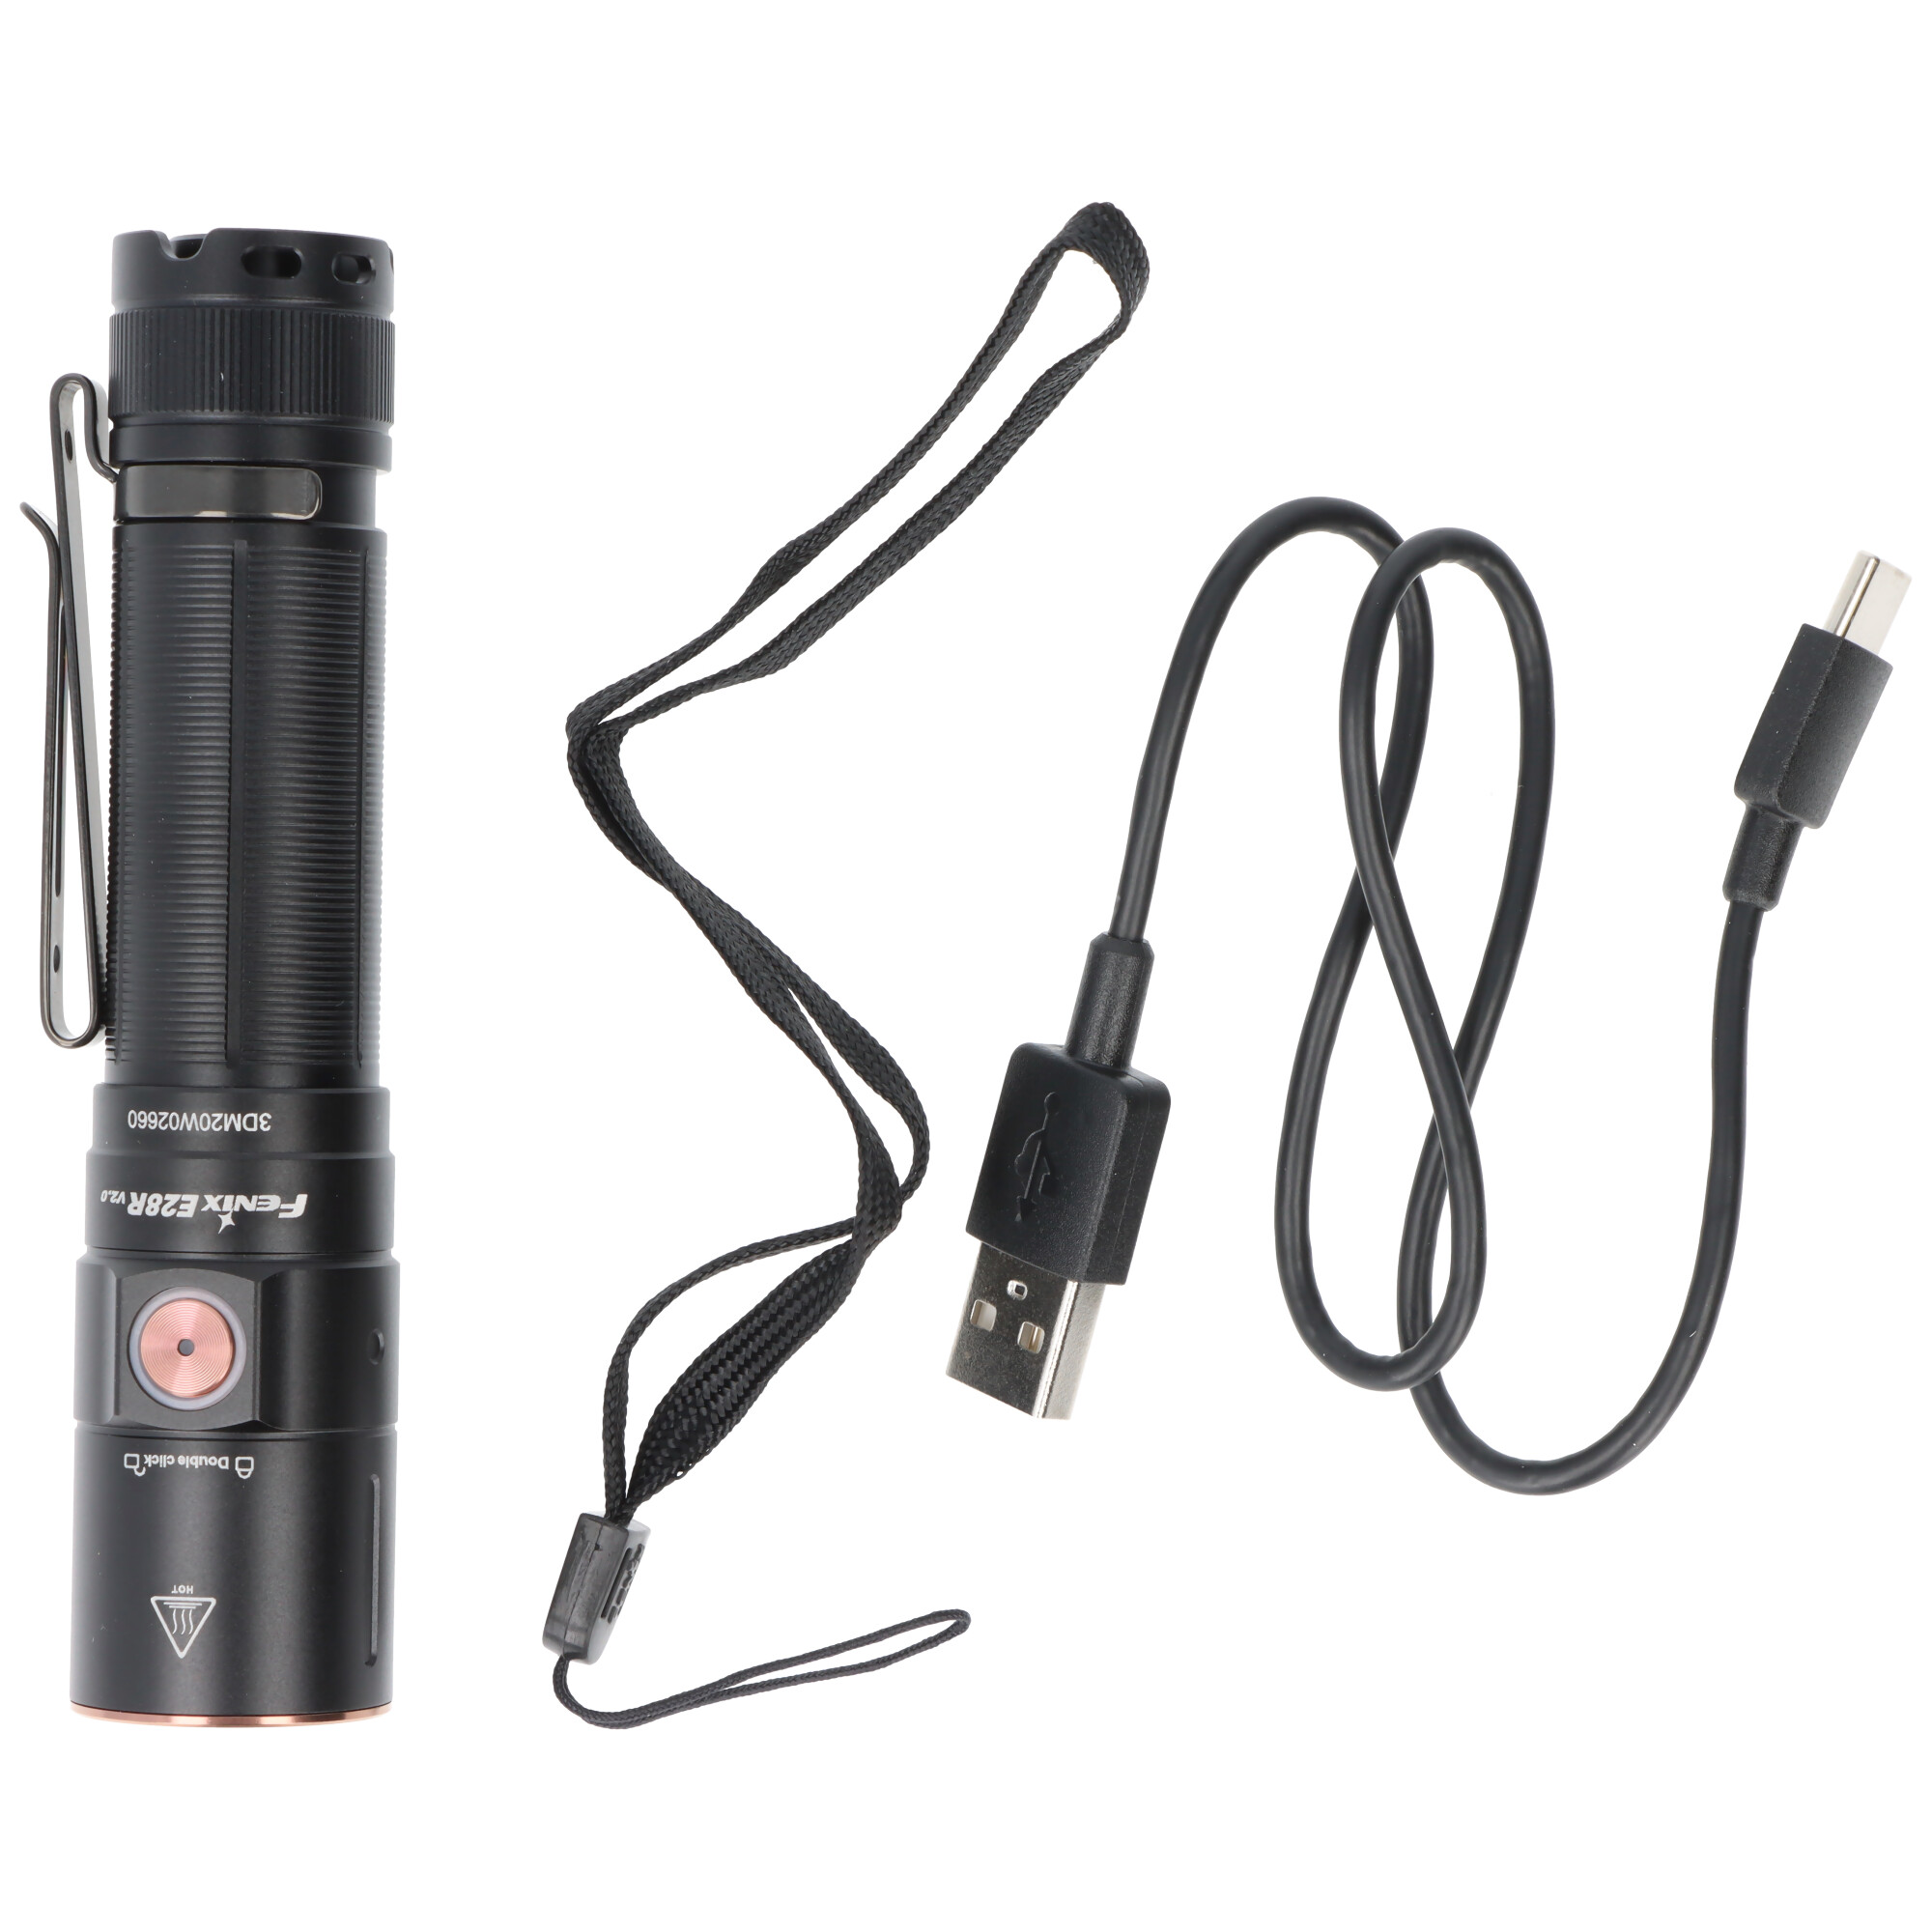 Fenix E28R V2.0 LED-Taschenlampe, max. 1.700 Lumen, Bedienung über einen einzigen Schalter, inkl. ARB-L18-3400 18650 Akku